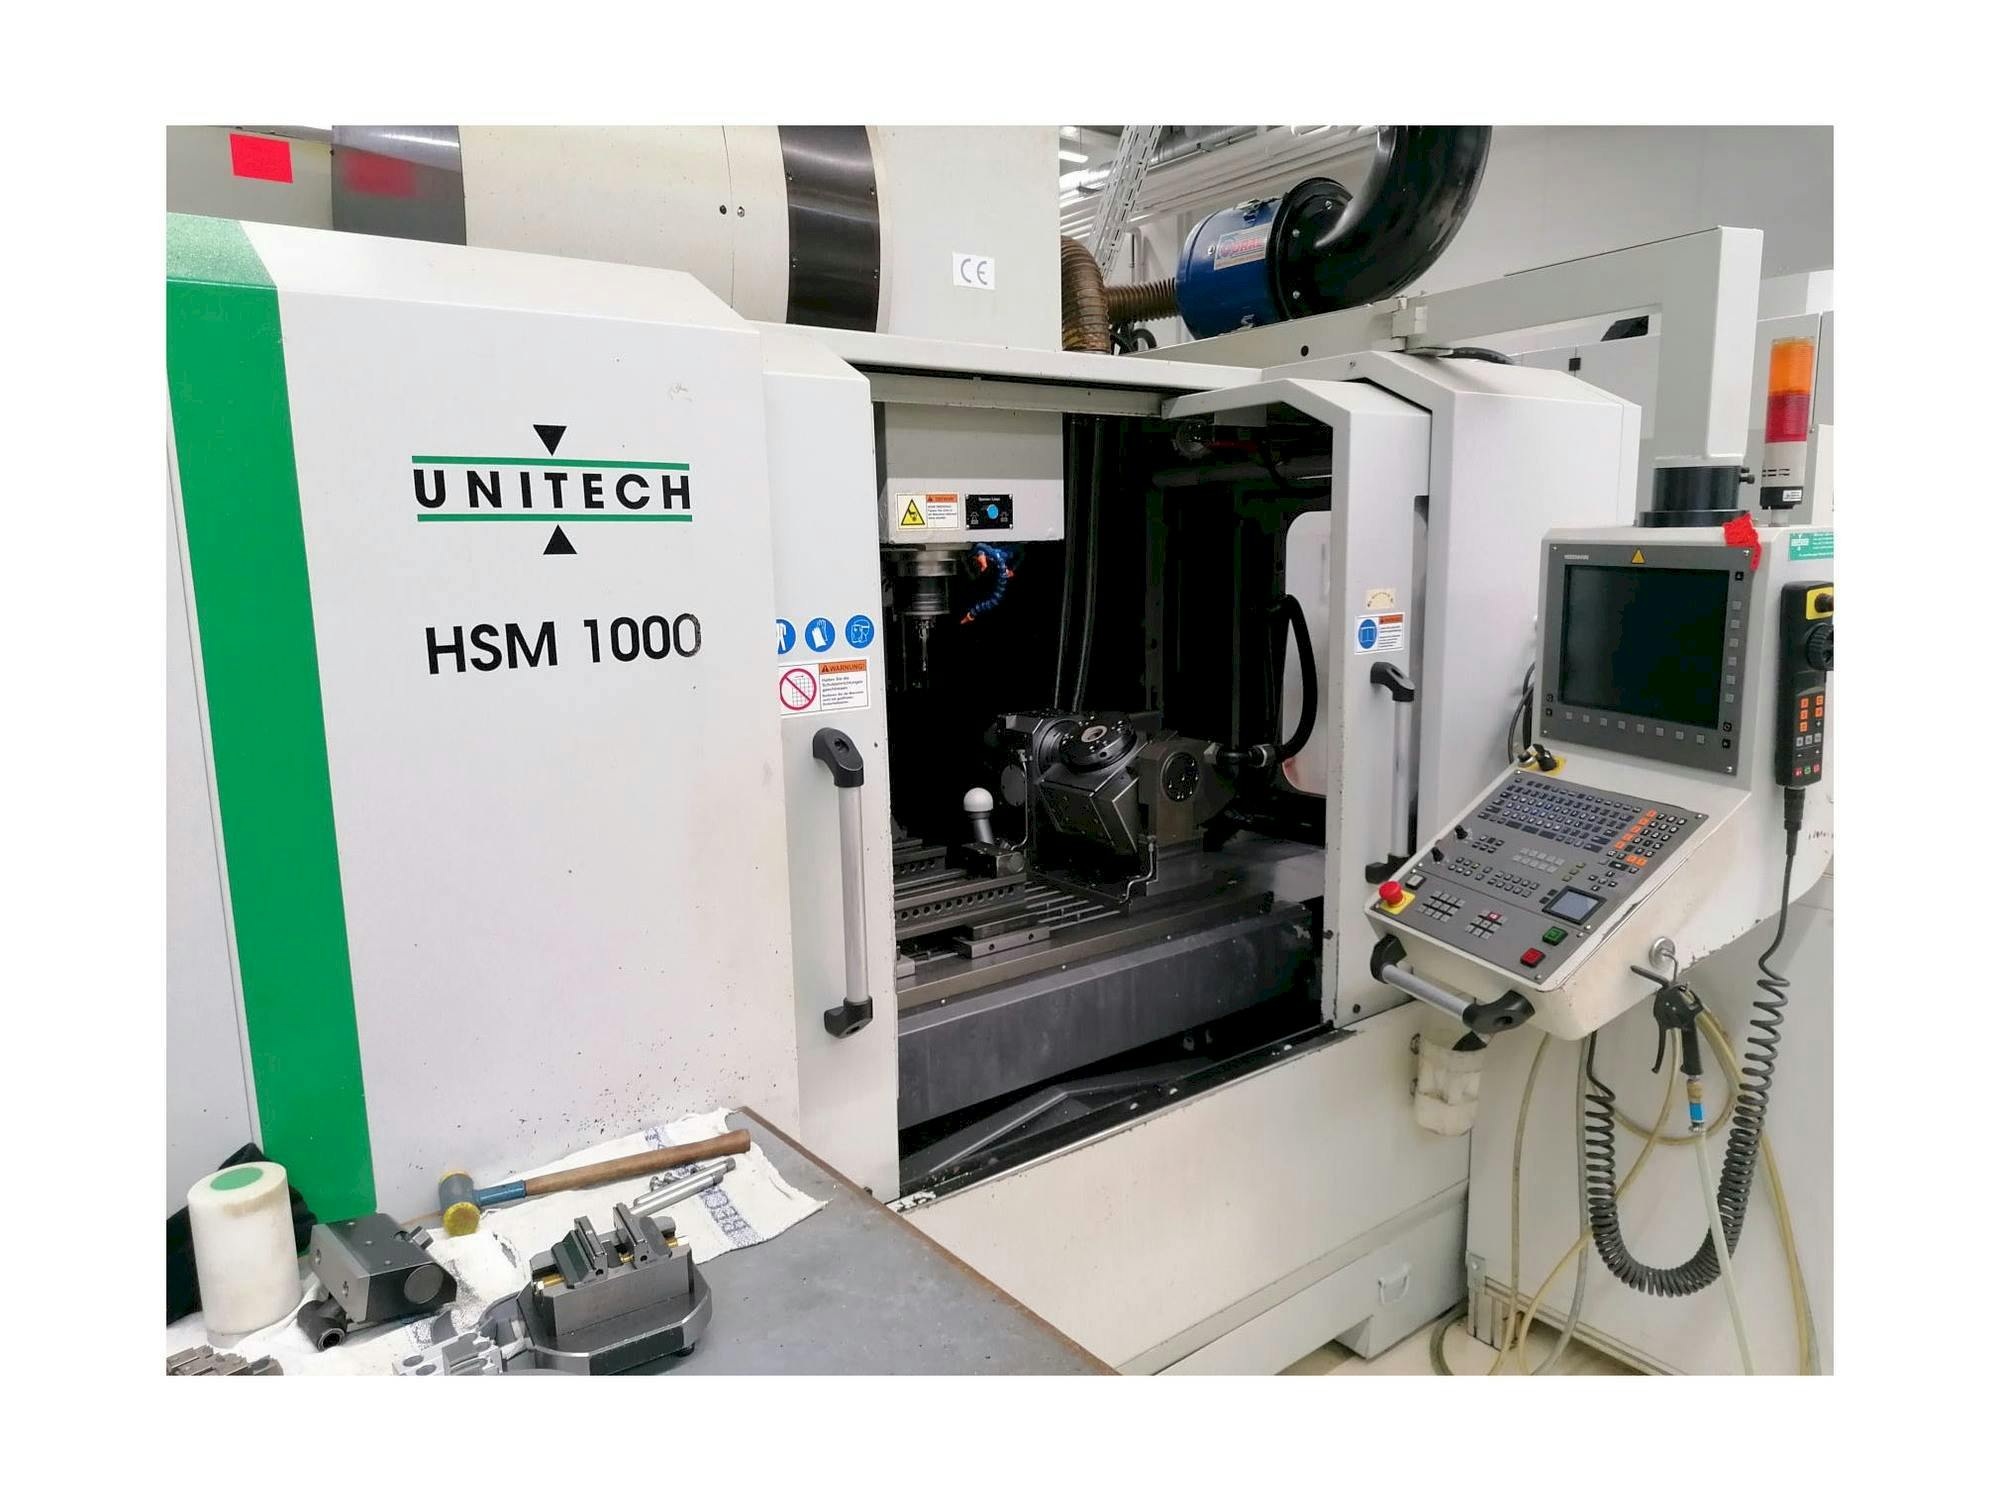 Frontansicht der UNITECH HSM1000  Maschine